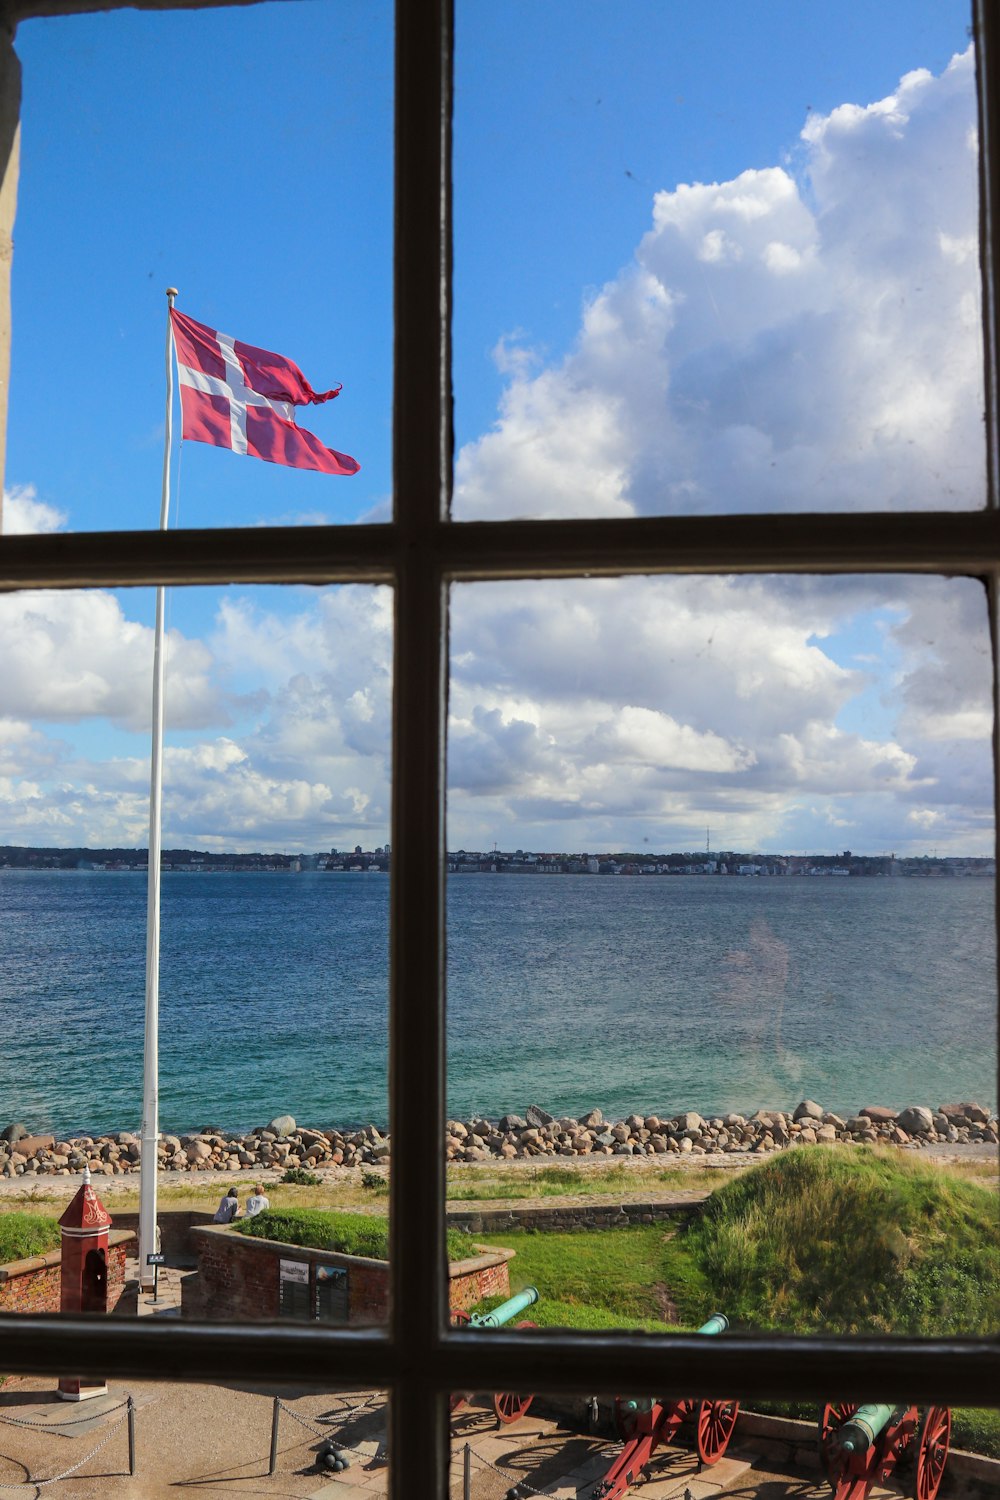 Bandeira da Dinamarca no topo do poste acima de canhões e árvores perto do mar durante o dia